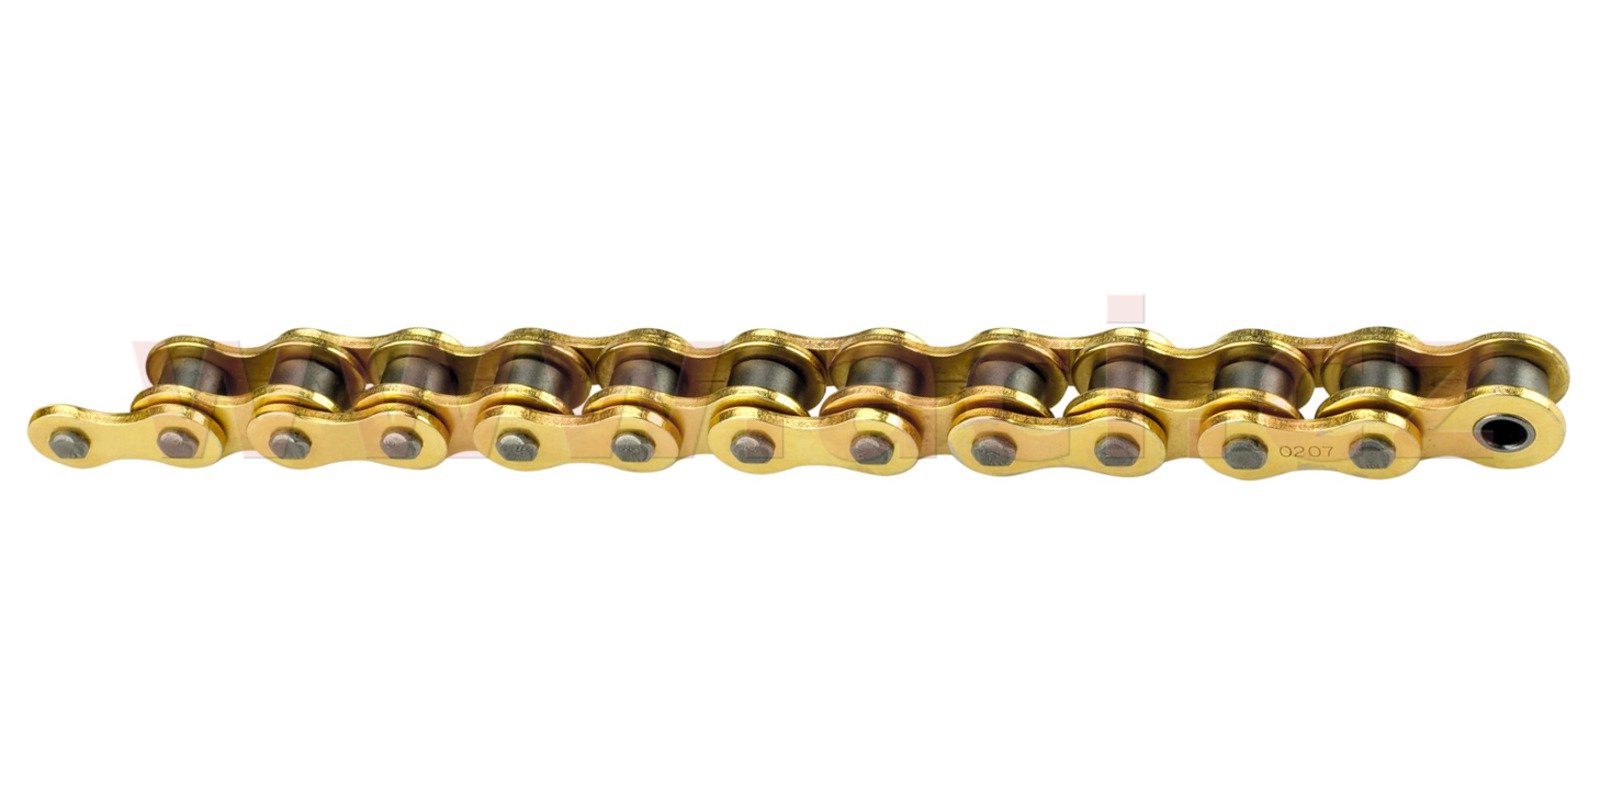 Obrázek produktu řetěz 420MXR, SUNSTAR (bezkroužek, barva zlatá, 132 článků)